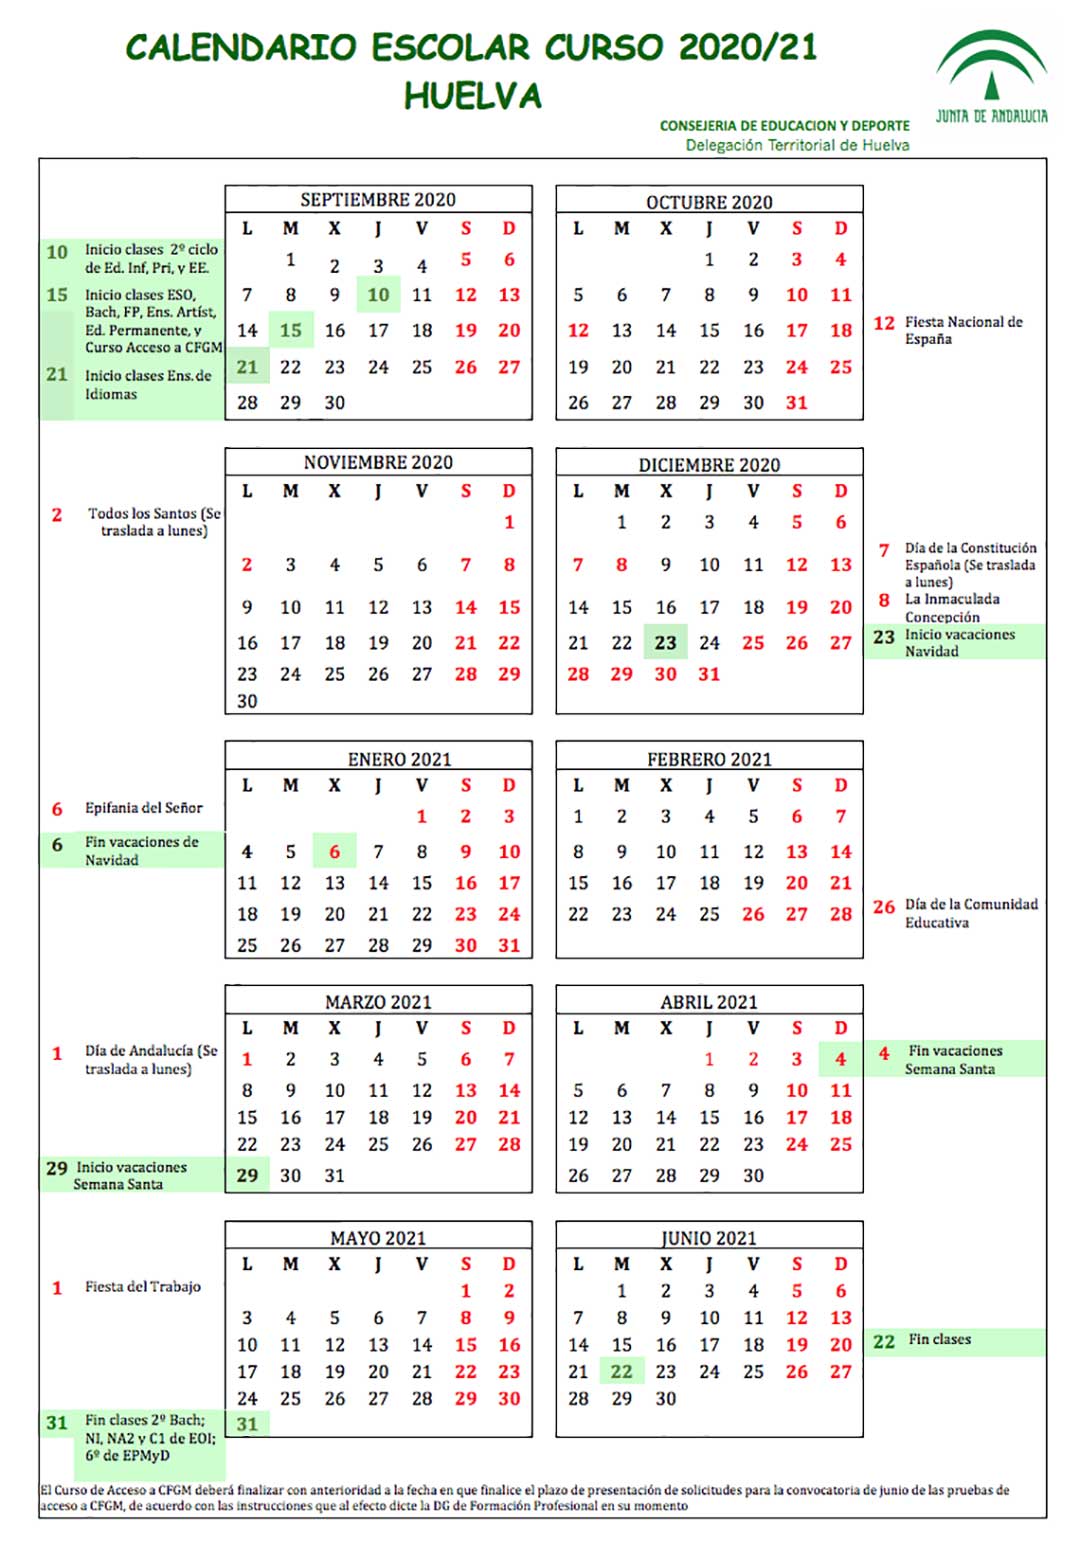 Calendario escolar Huelva para el curso 2020-2021